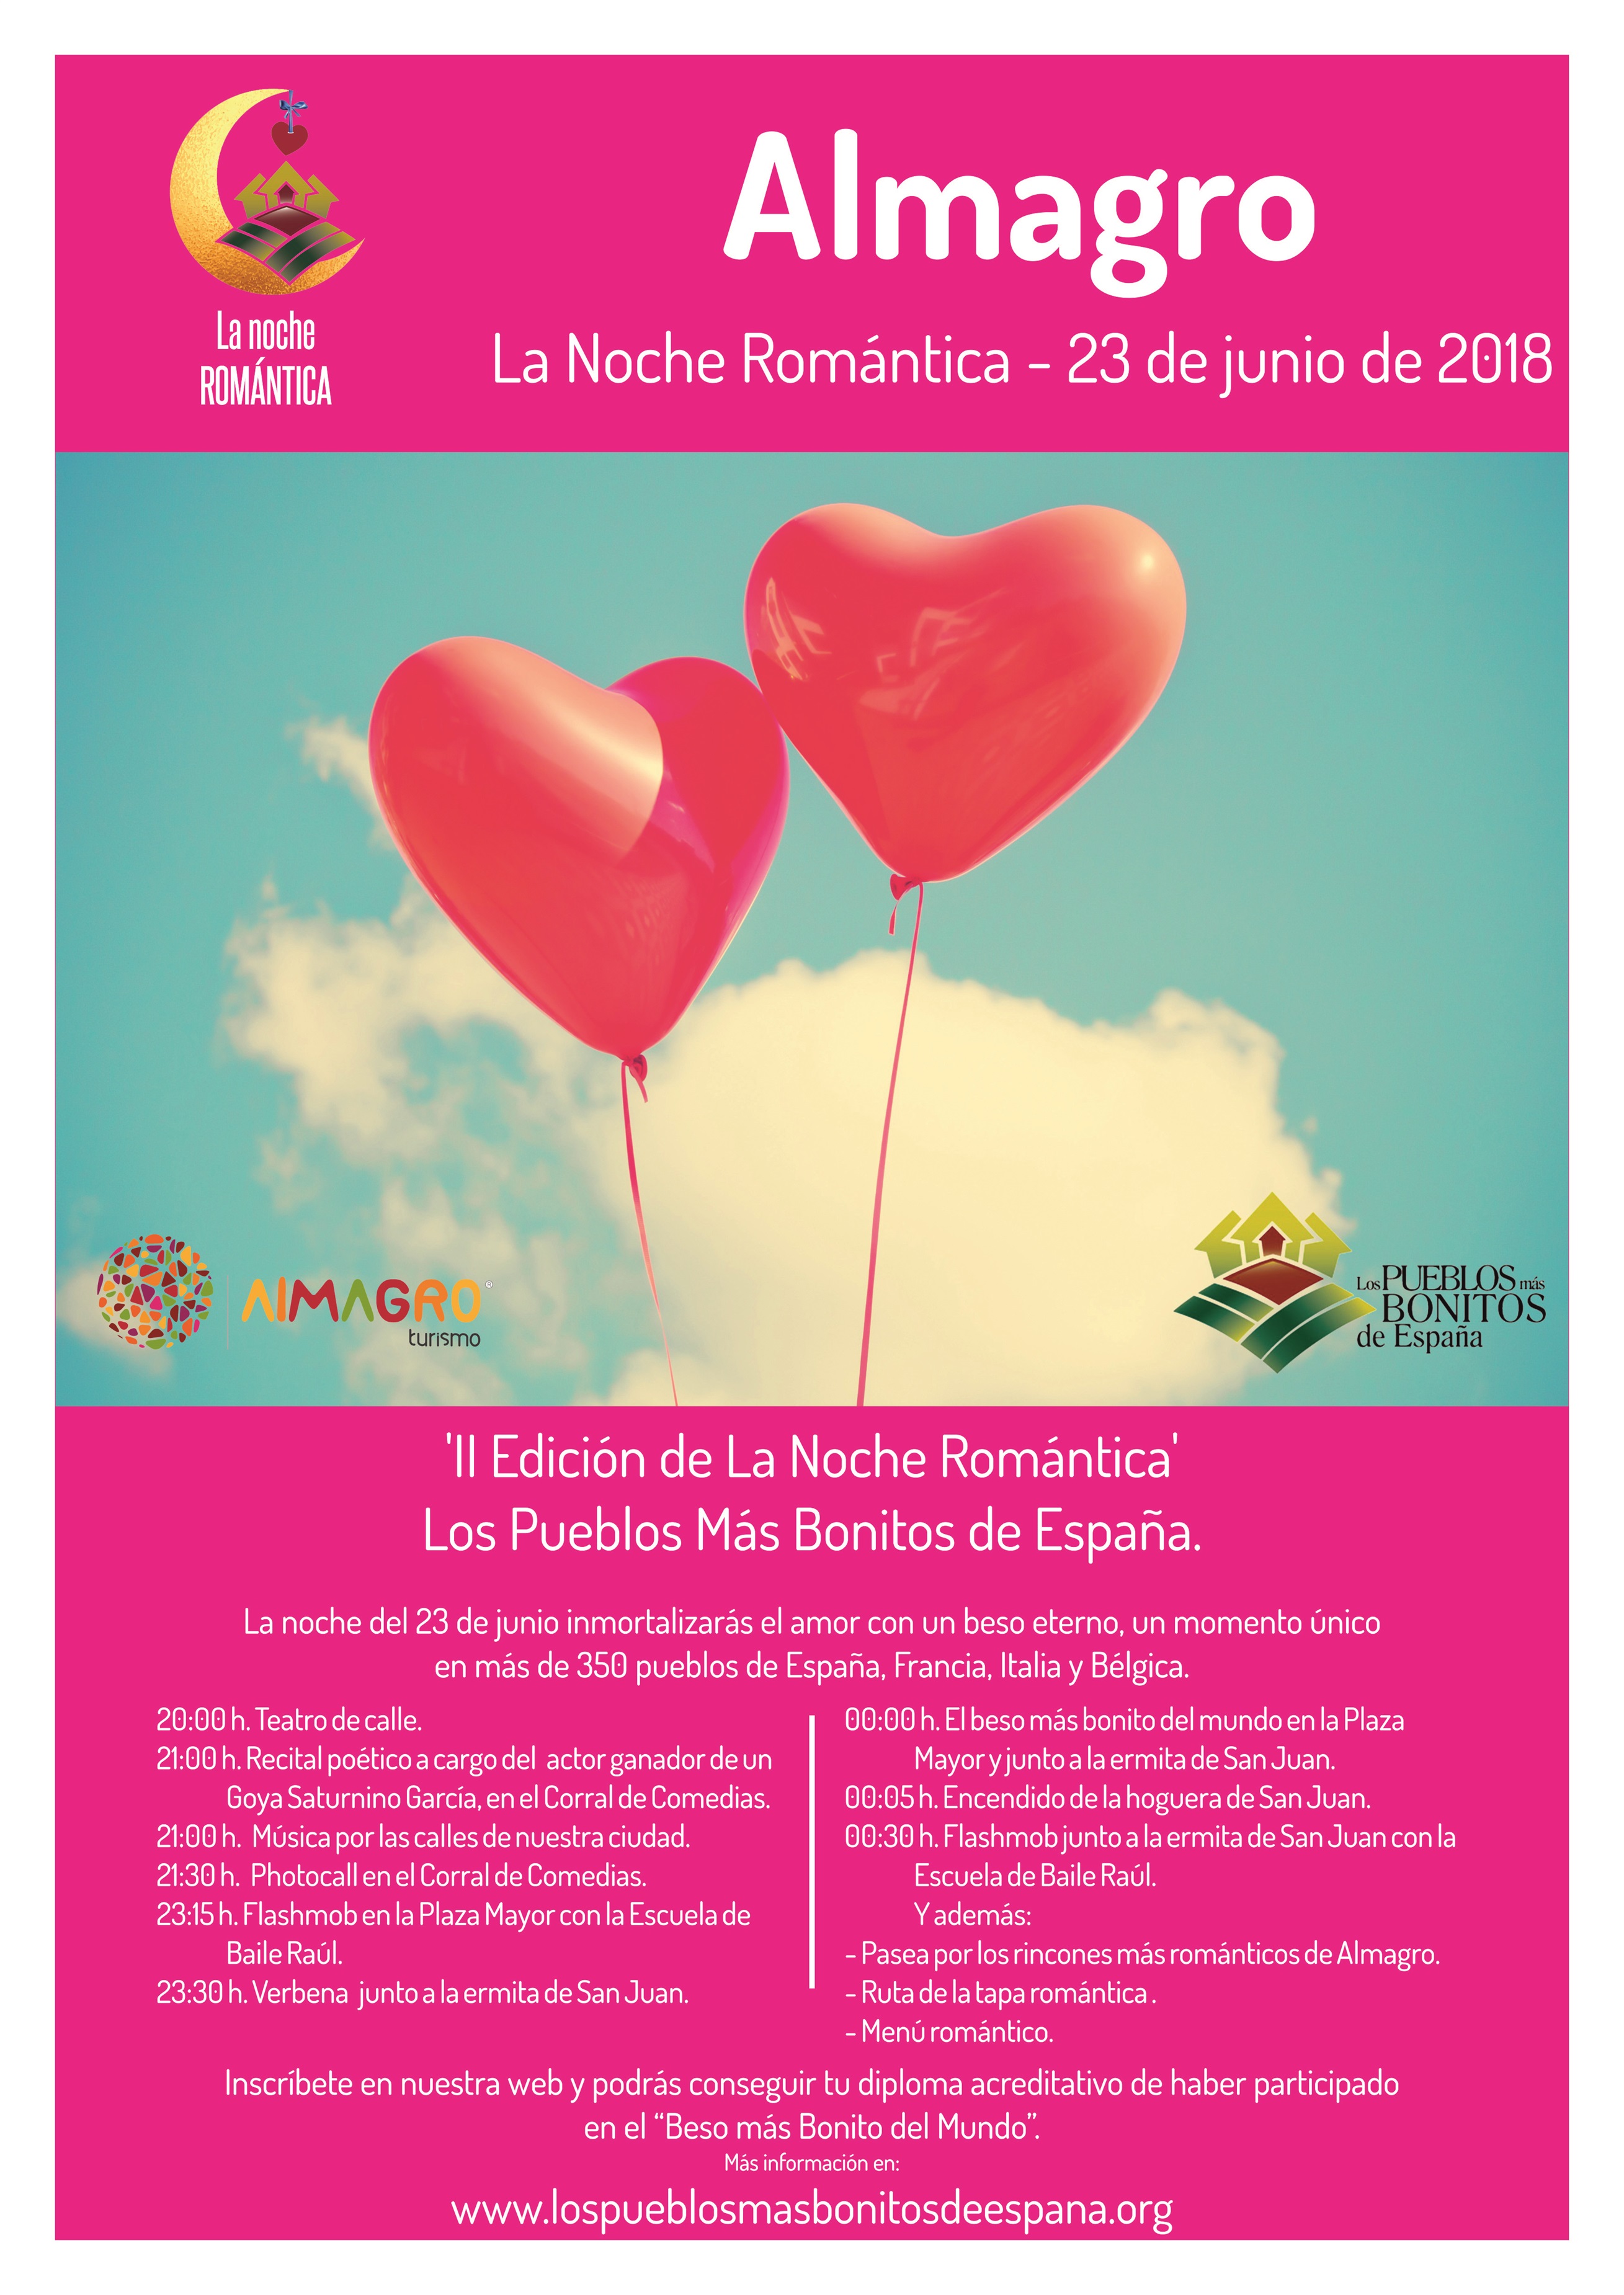 El sábado 23 se darán el 'Beso más Bonito del Mundo' en Almagro